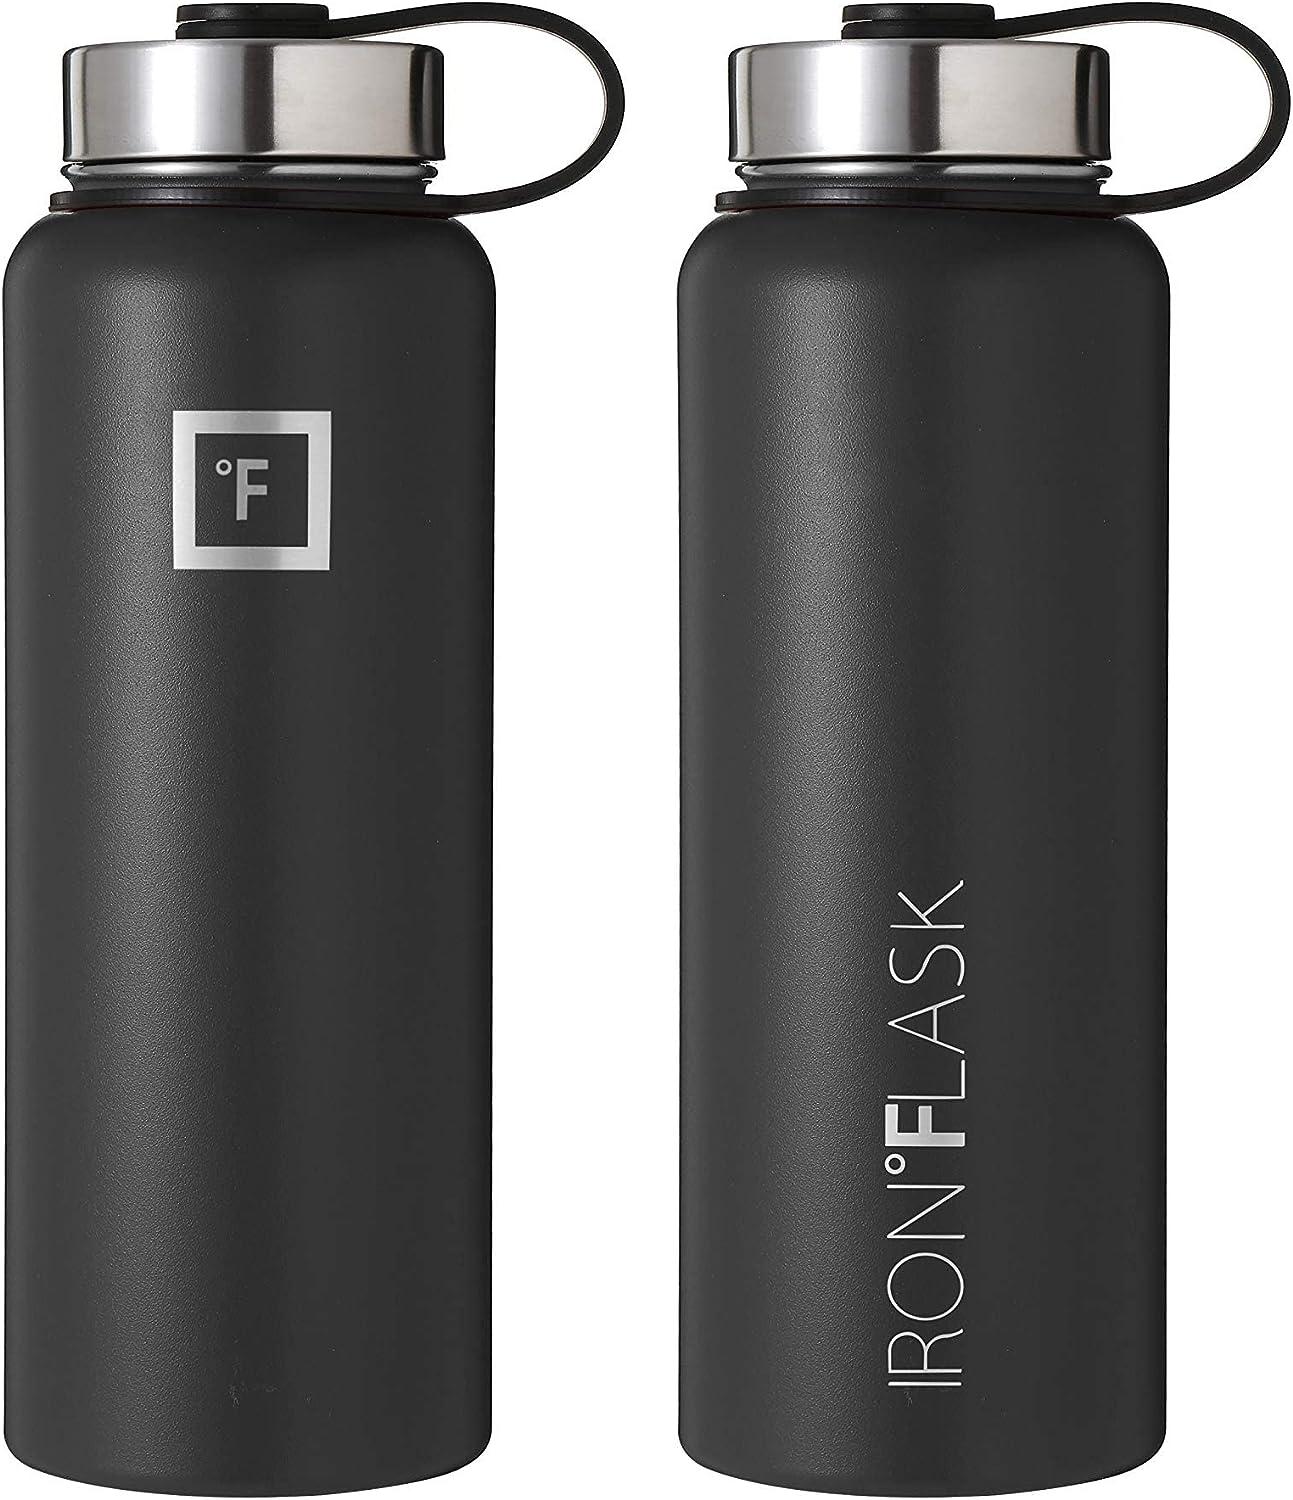 Iron Flask Sports Water Bottle - 14 Oz, 3 Lids (Spout Lid), Vacuum